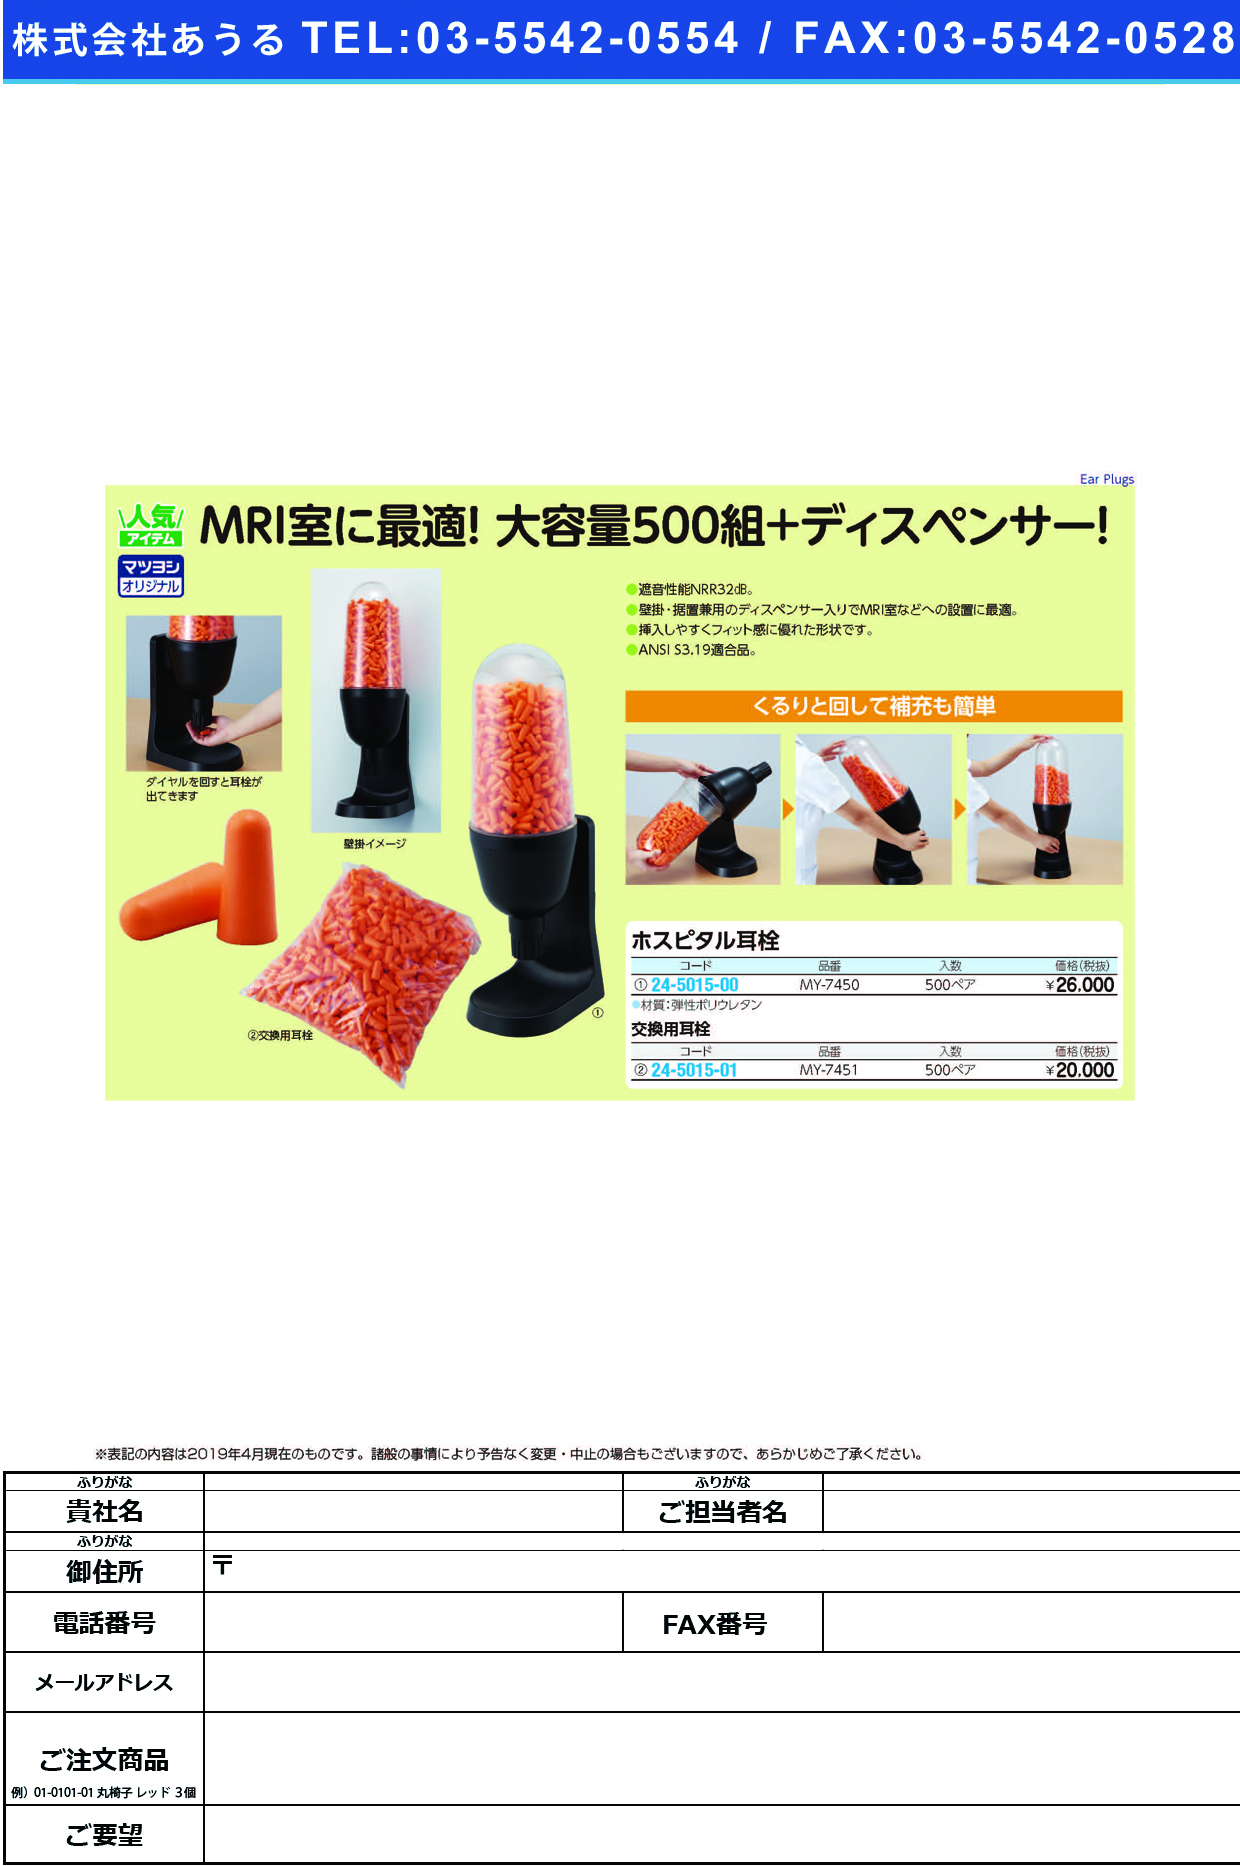 (24-5015-00)ホスピタル耳栓 MY-7450(500ﾍﾟｱ) ﾎｽﾋﾟﾀﾙﾐﾐｾﾝ【1組単位】【2019年カタログ商品】